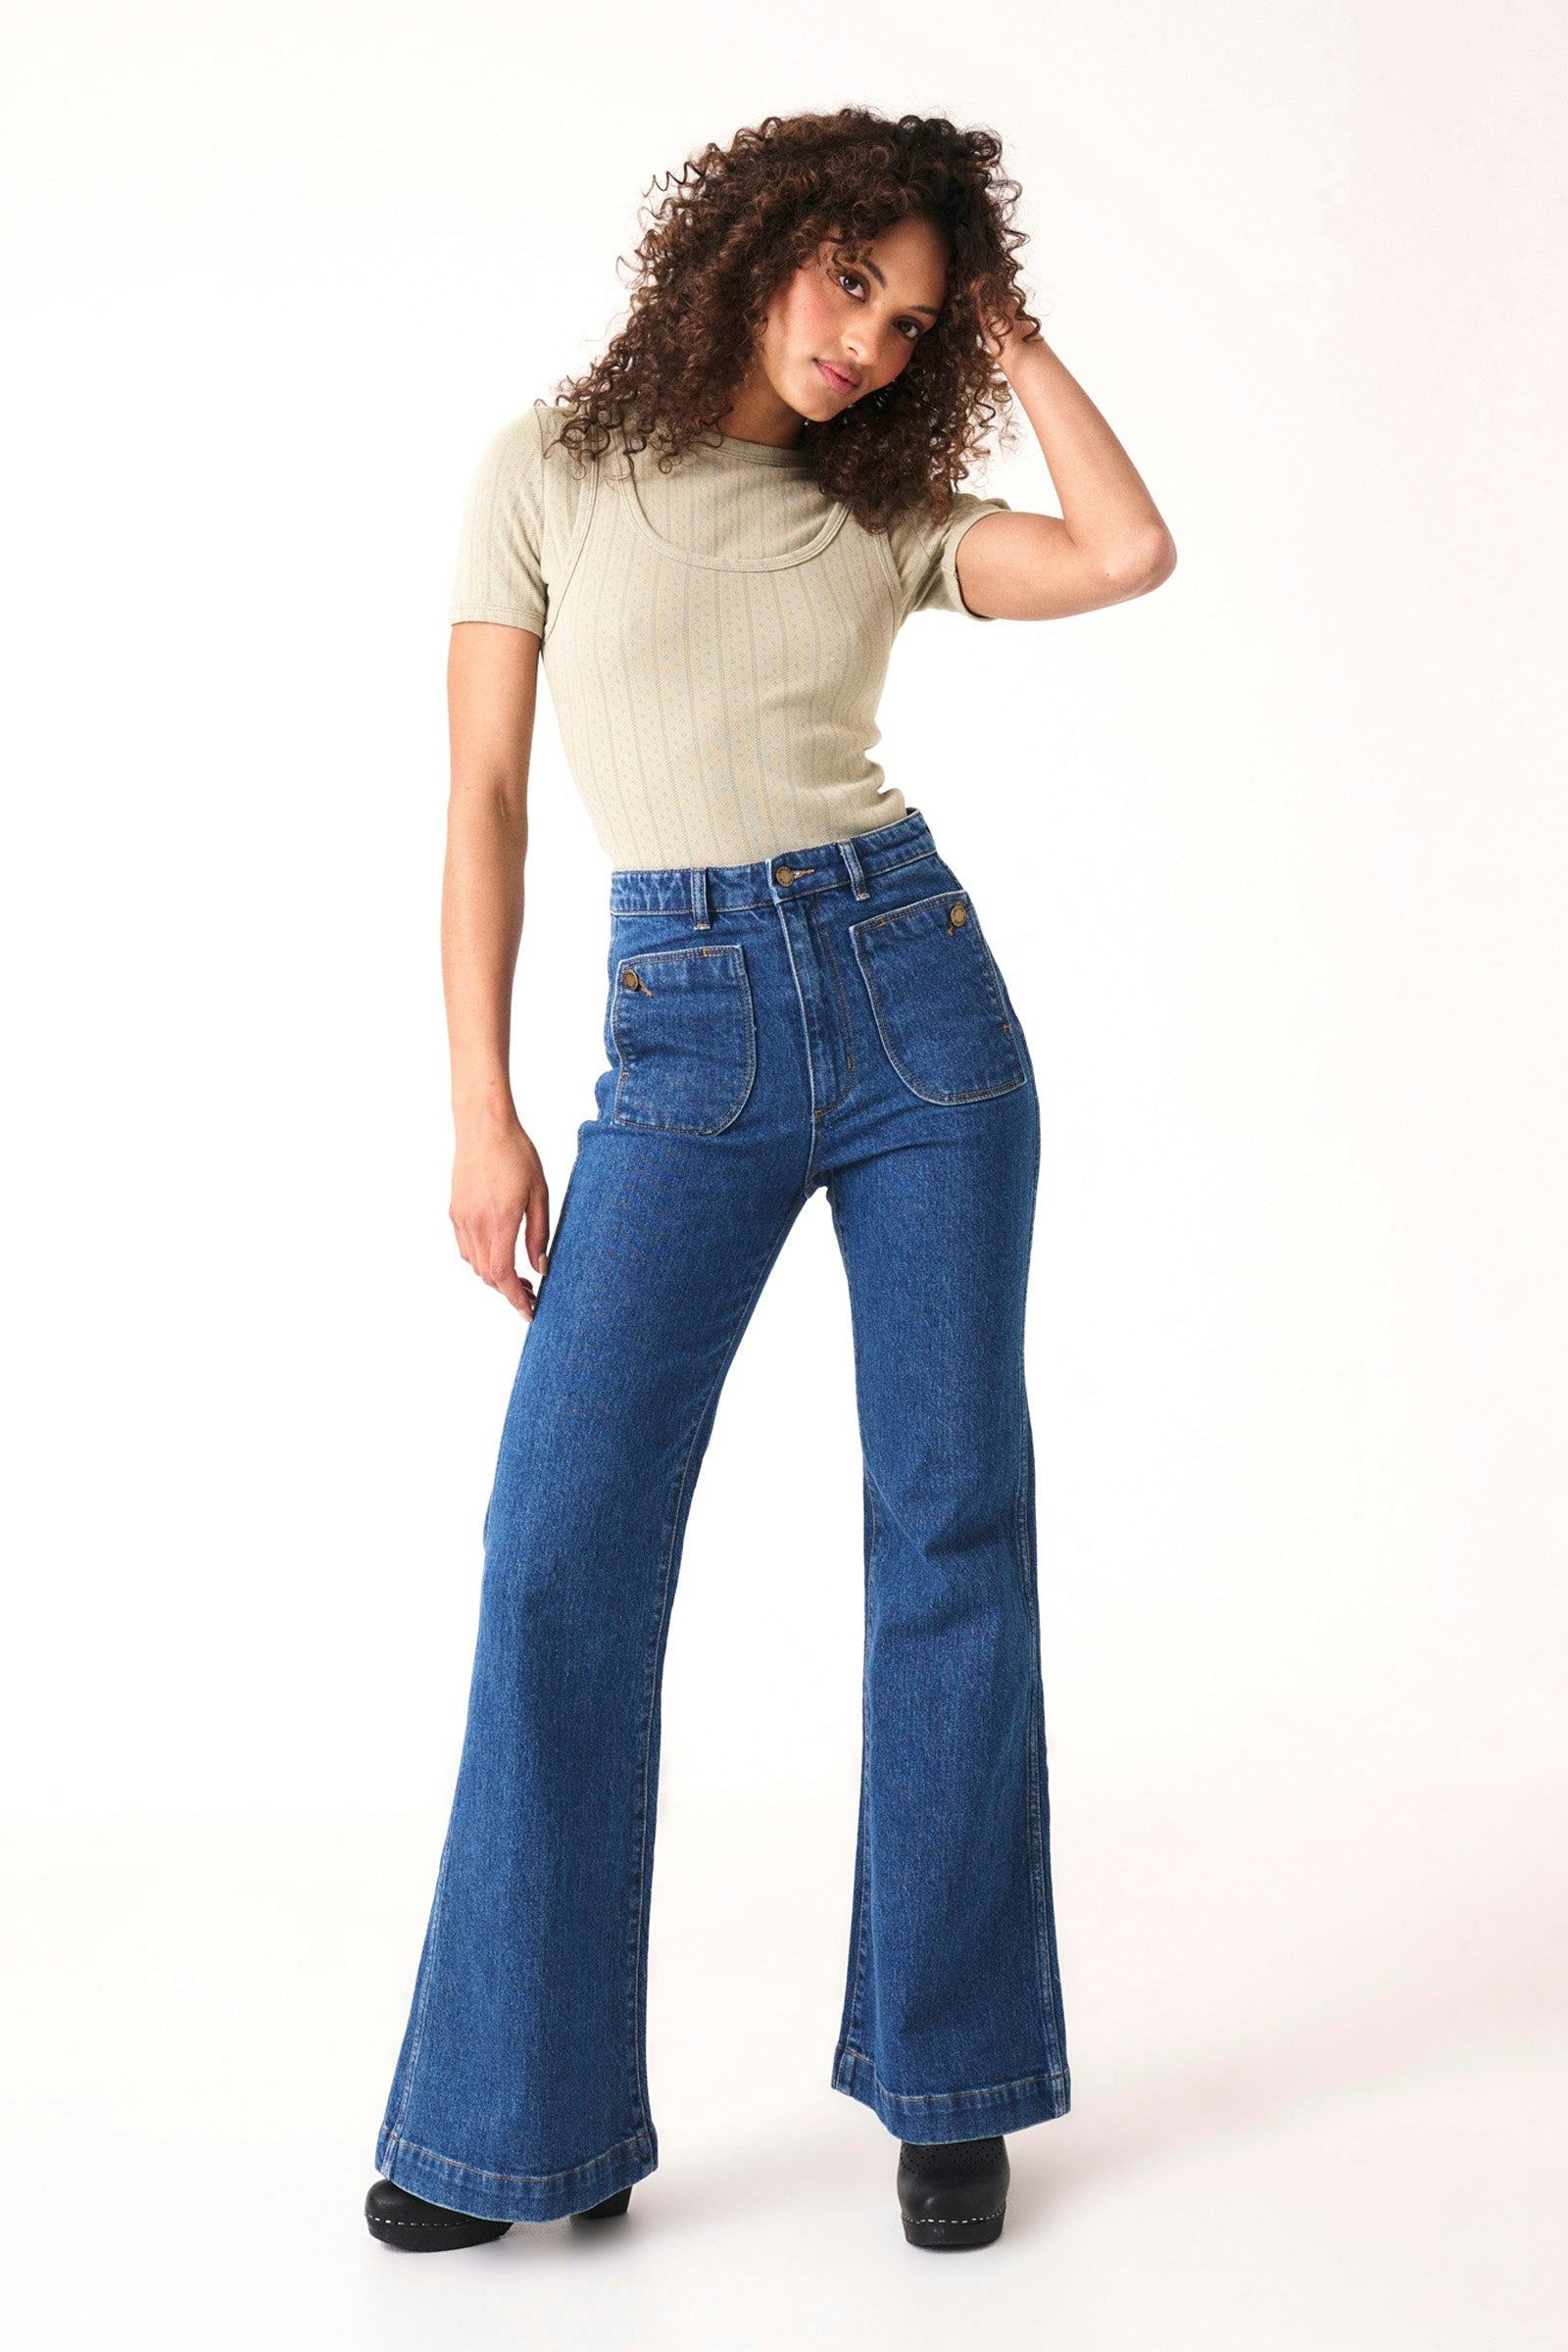 Rolla's Jeans - Vintage Inspired Denim & Denim Jeans Online